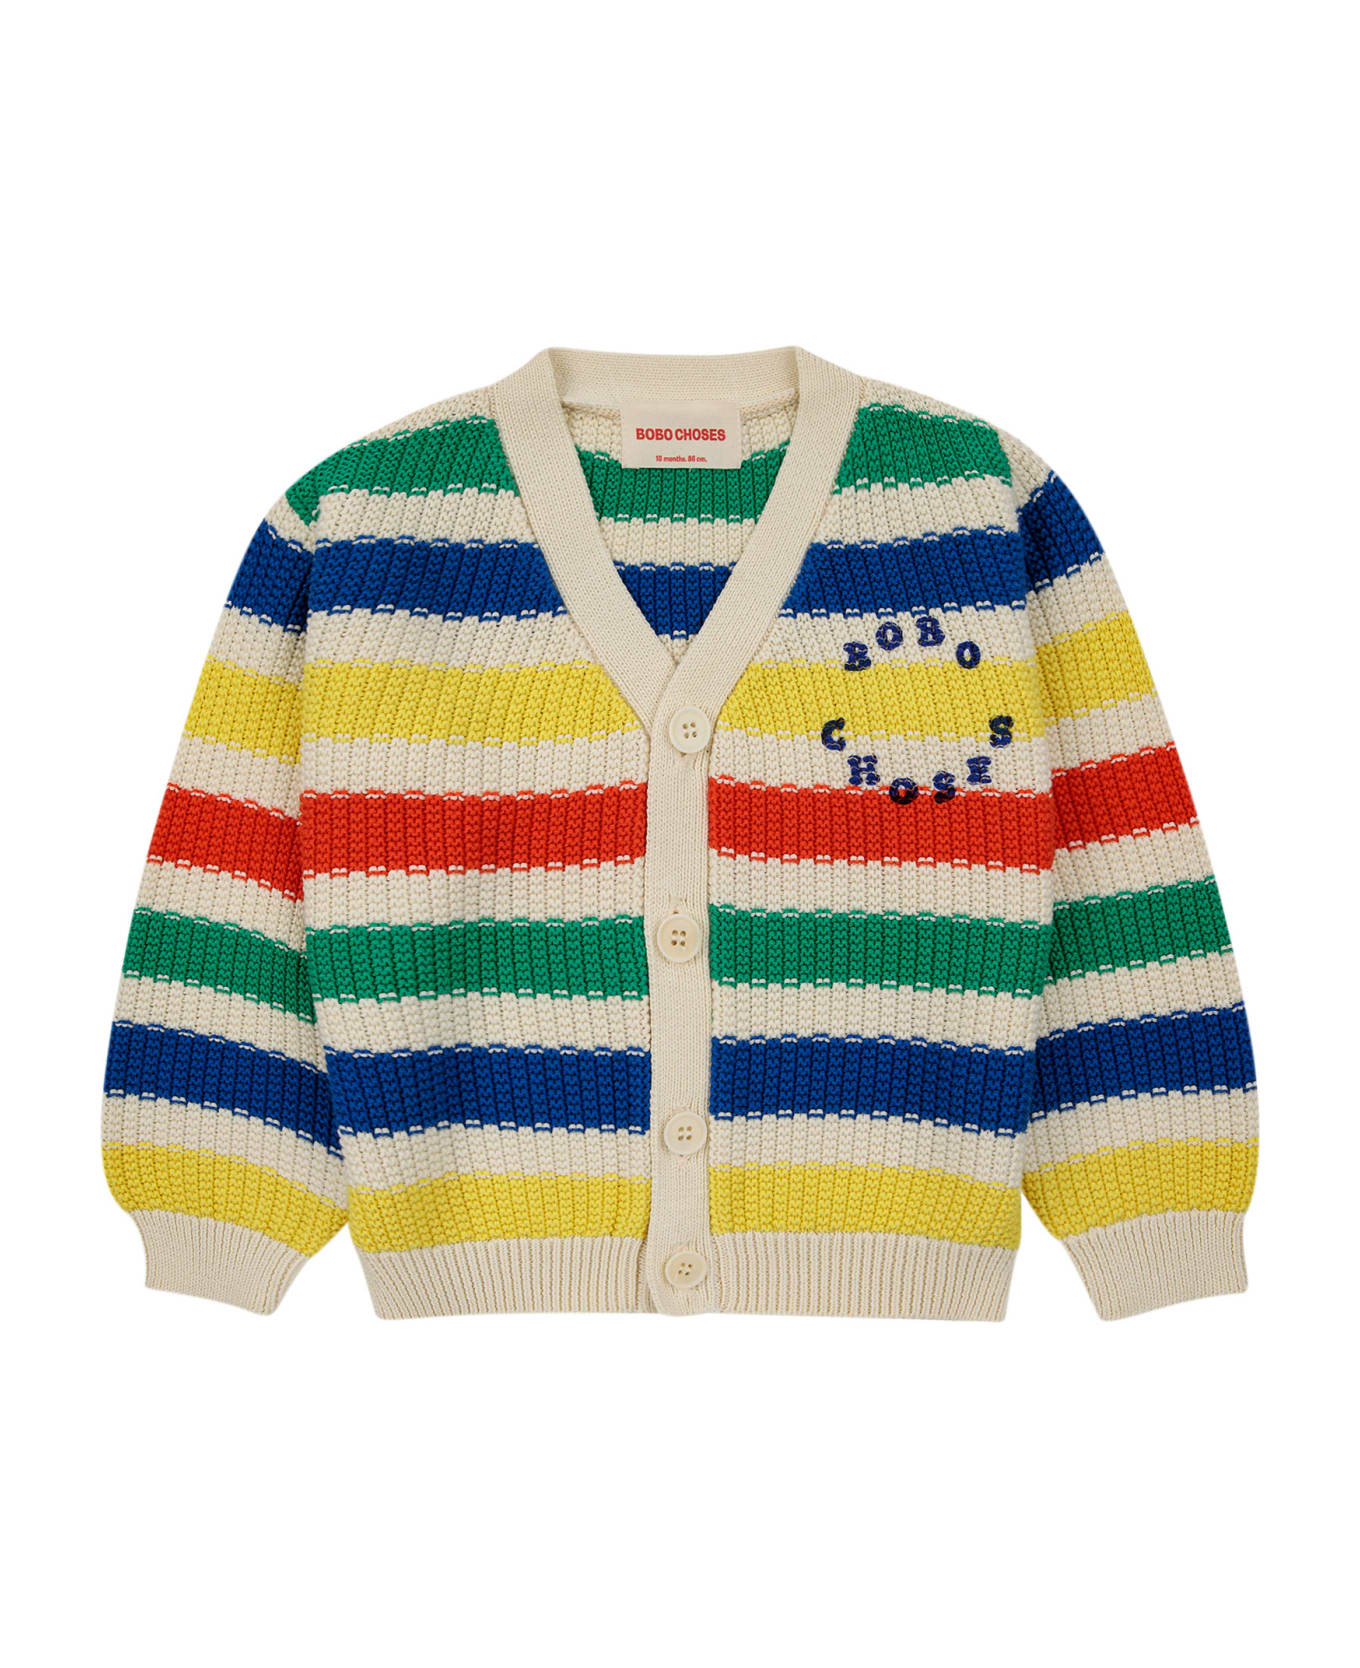 Bobo Choses Multicolor Cardigan For Babies - Multicolor